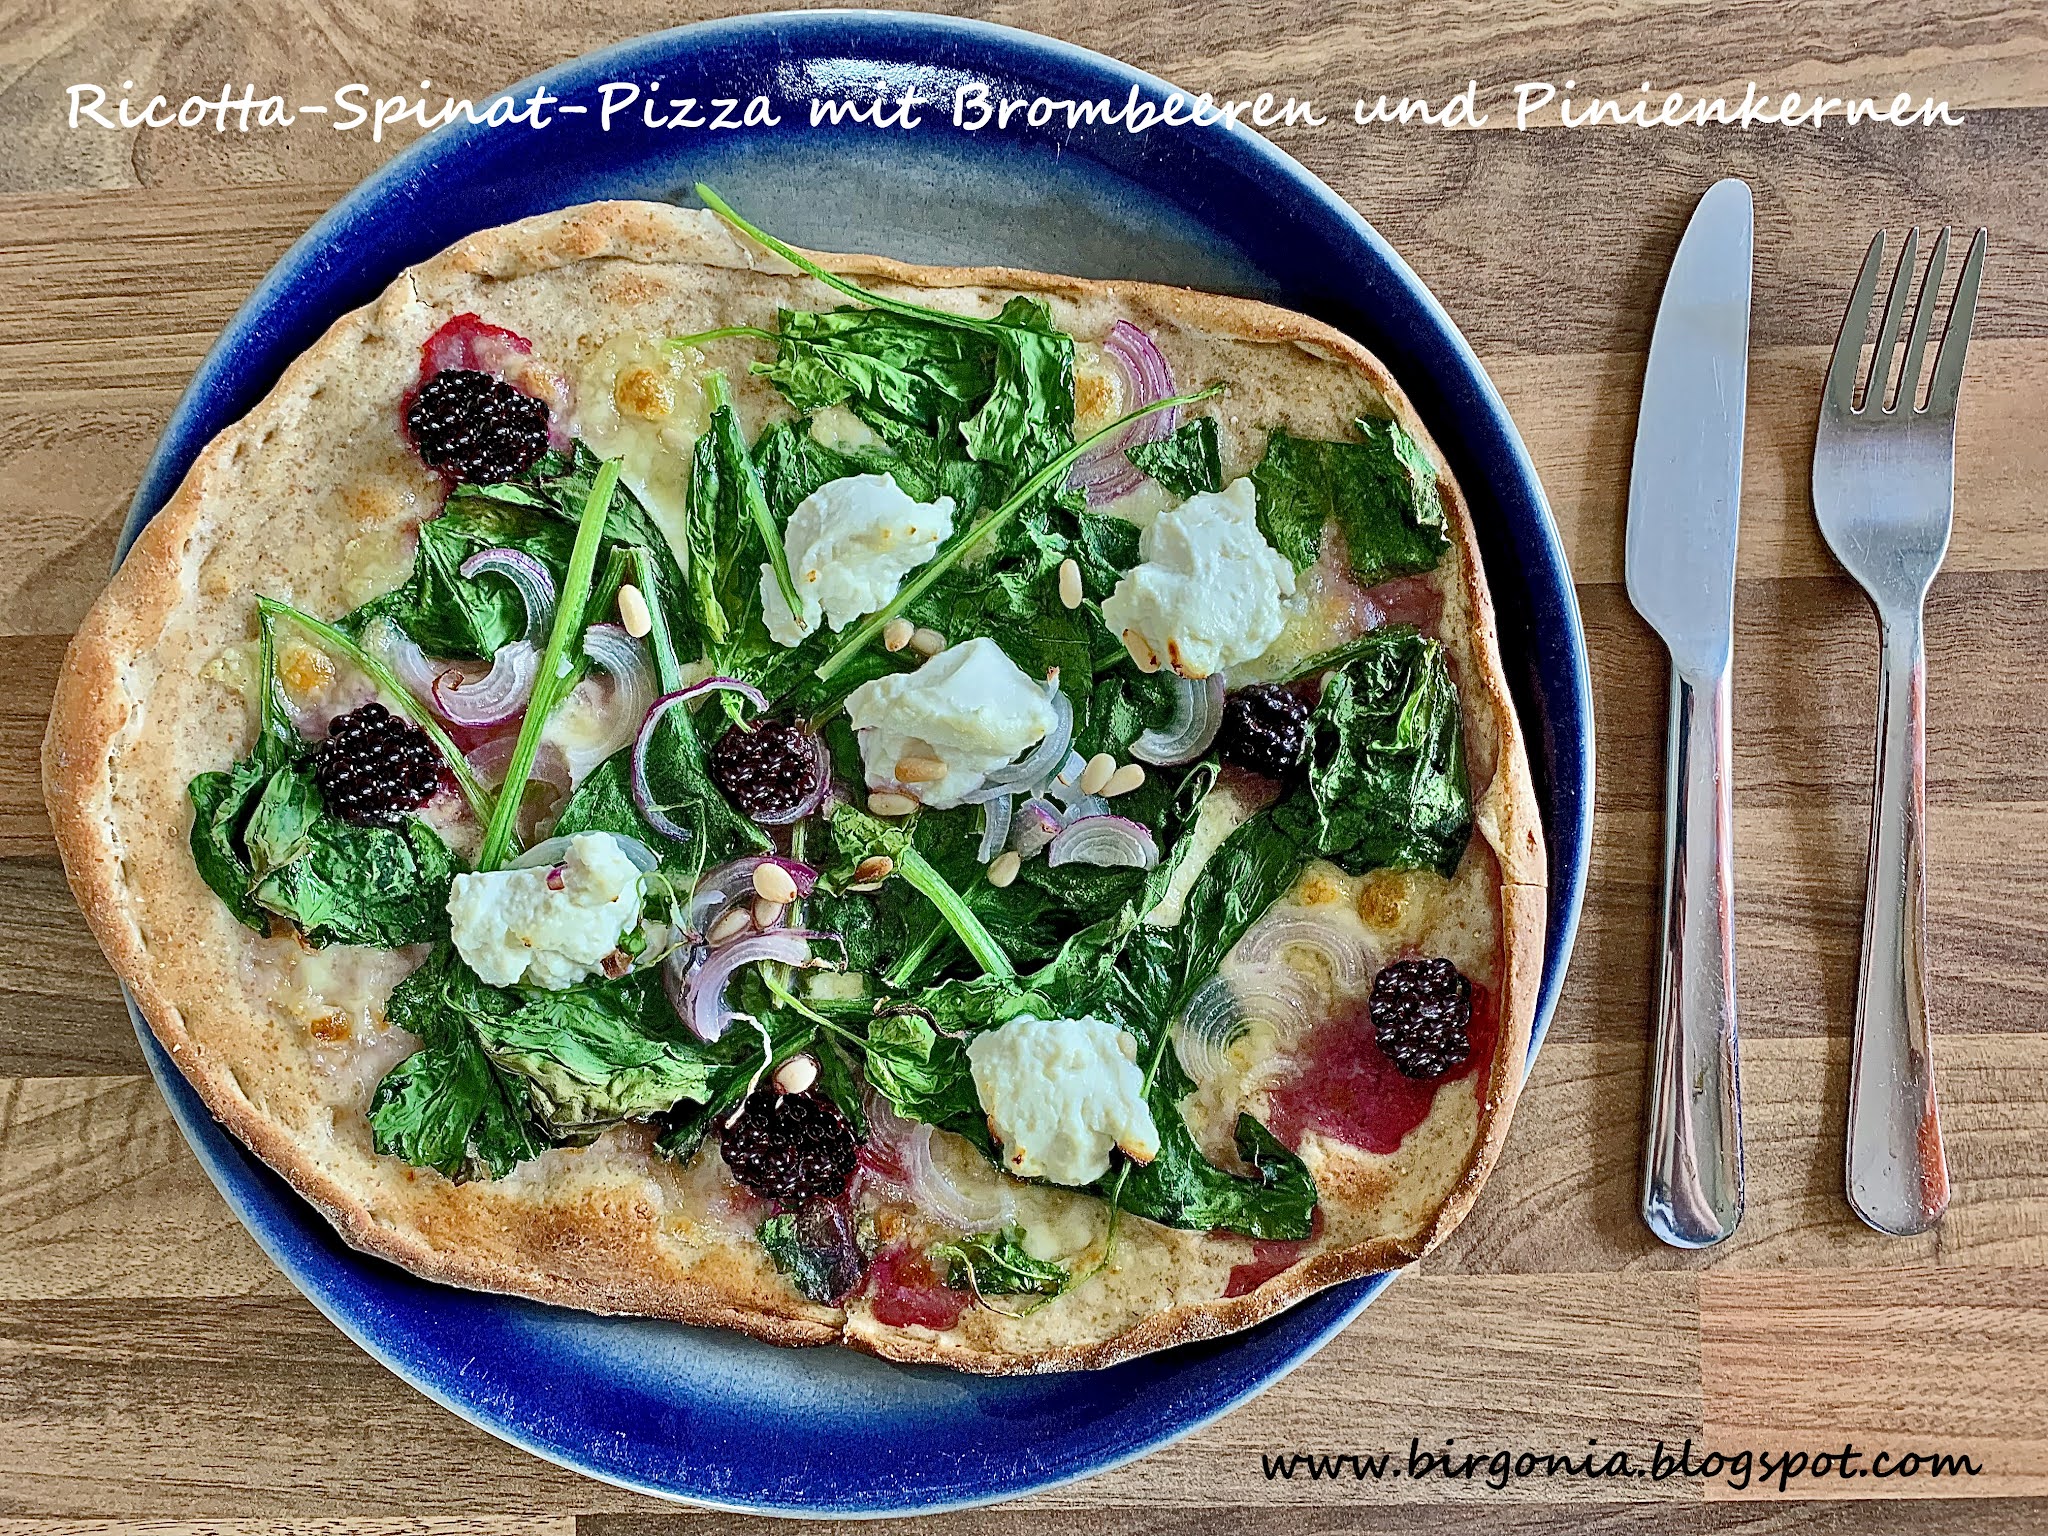 birgonia: Ricotta-Spinat-Pizza mit Brombeeren und Pinienkernen